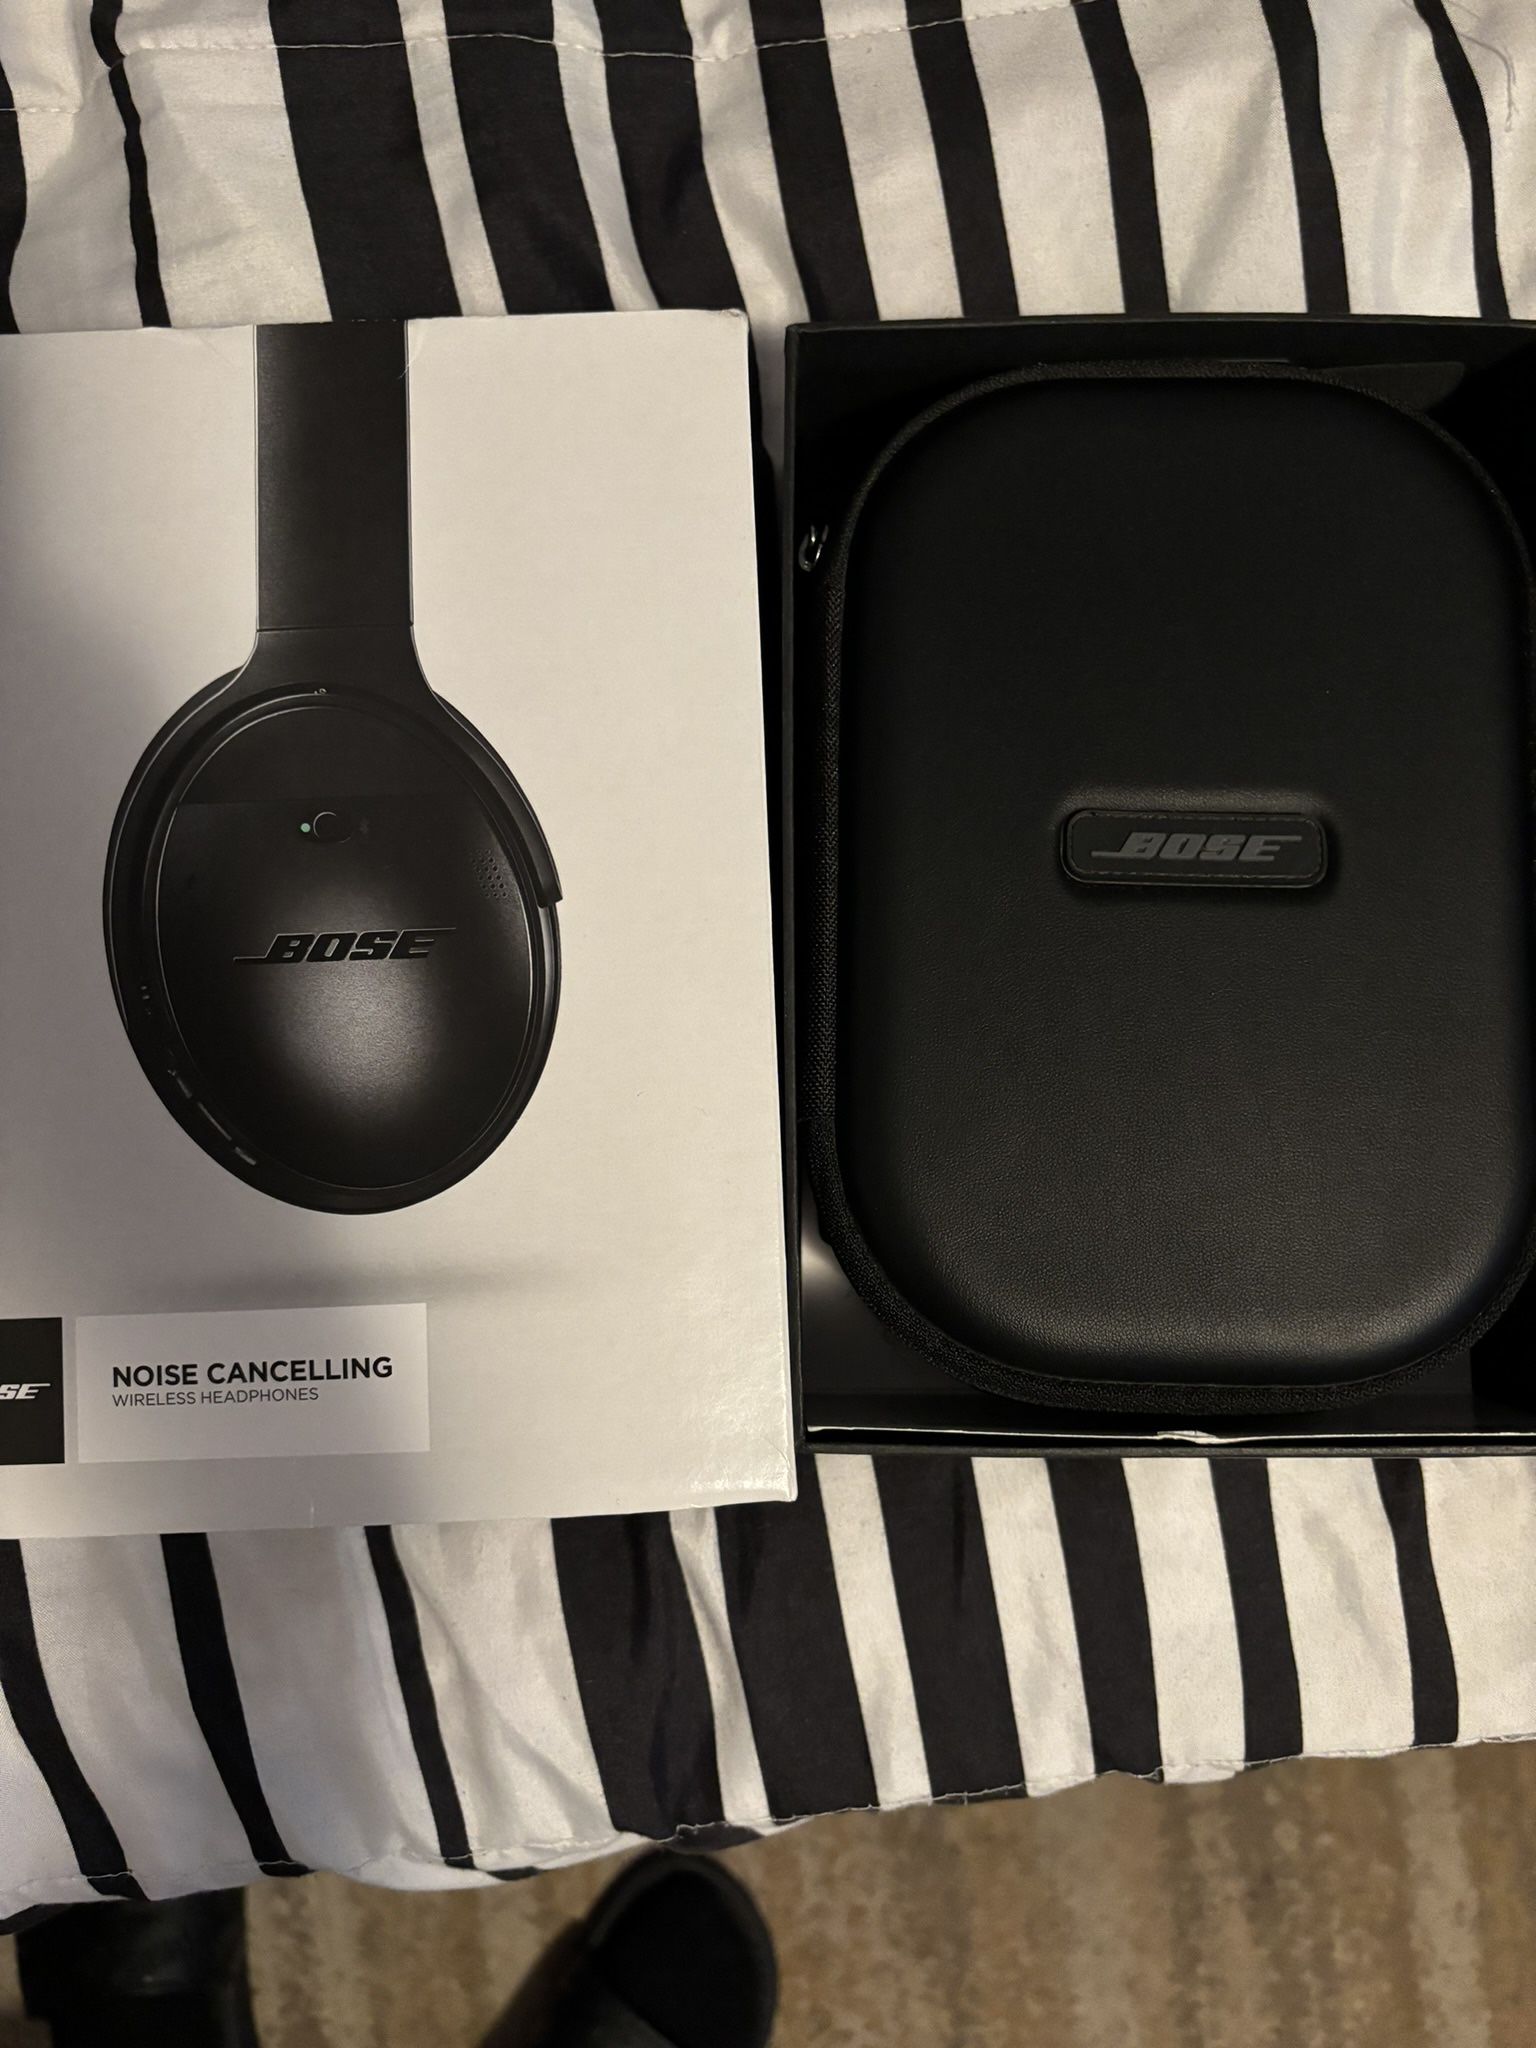 Bose QuietComfort Headphones - Noise Canceling New w/ Box